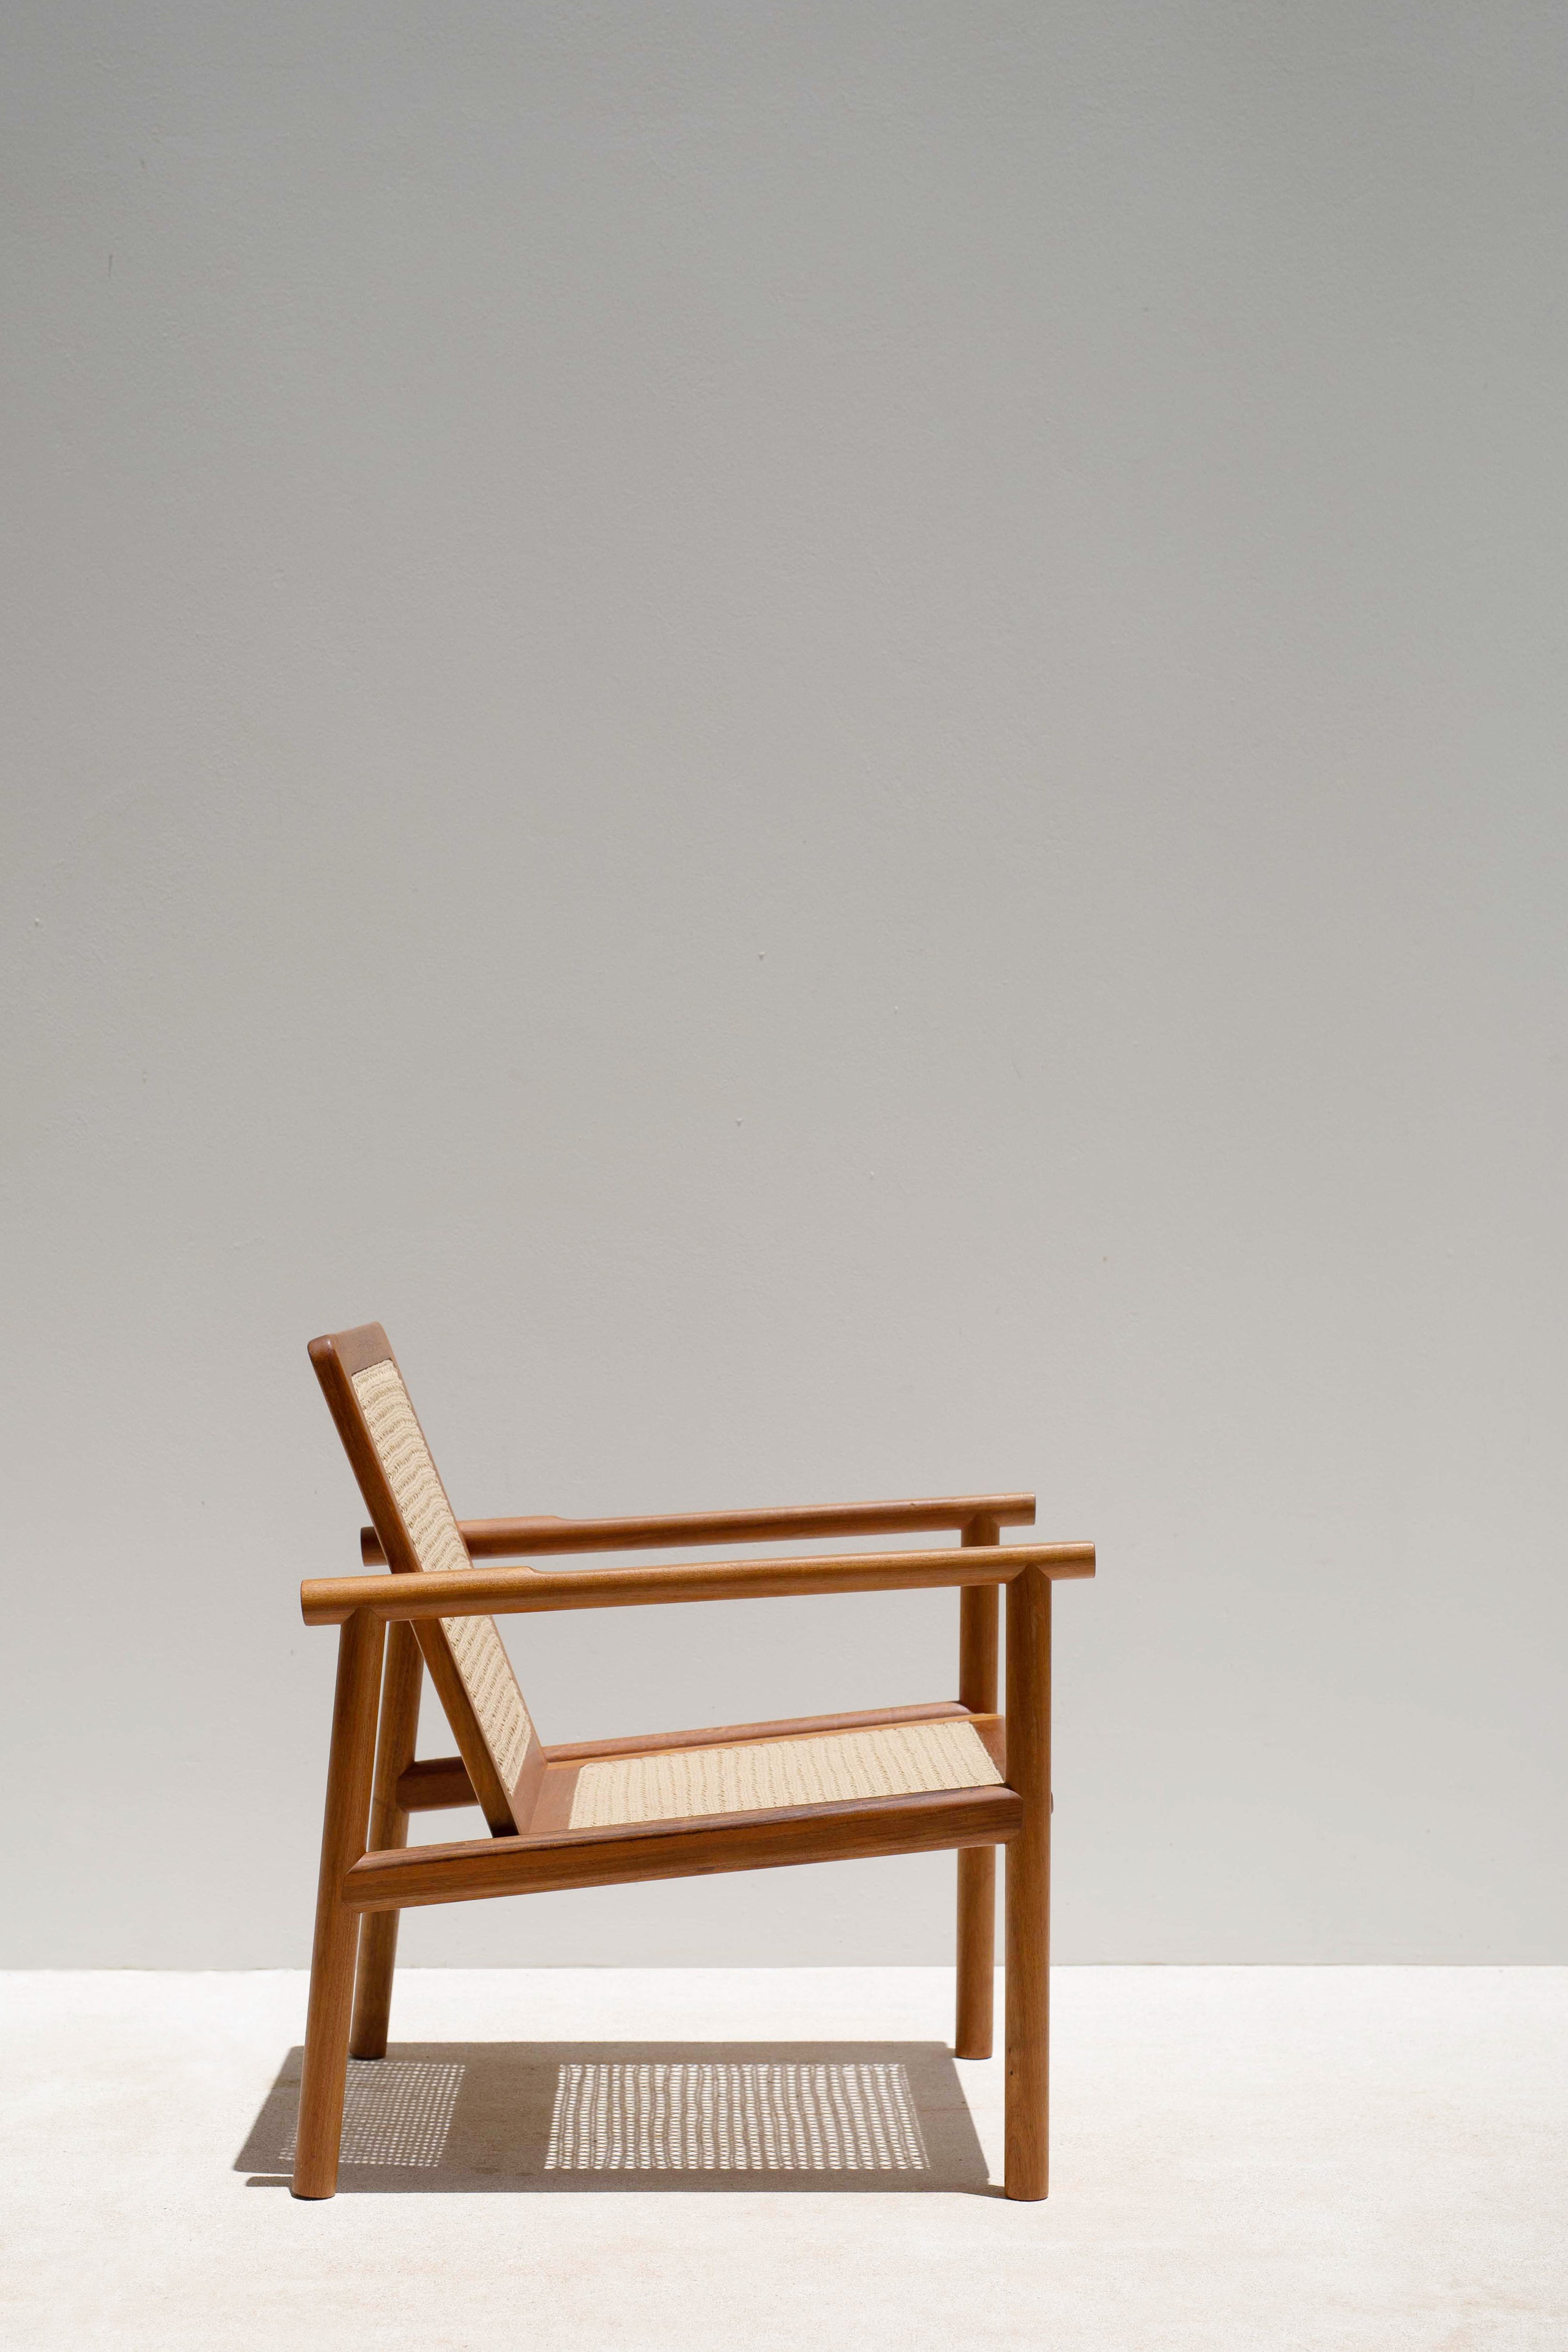 Der Sessel hat eine einfache und sehr leichte Struktur. Seine klaren Linien mit glatten und abgerundeten Kanten verschmelzen mit dem sorgfältigen handgewebten Muster. Bei diesem handgewebten Stoff, der von einer Kunsthandwerkerfamilie aus Bacalar,